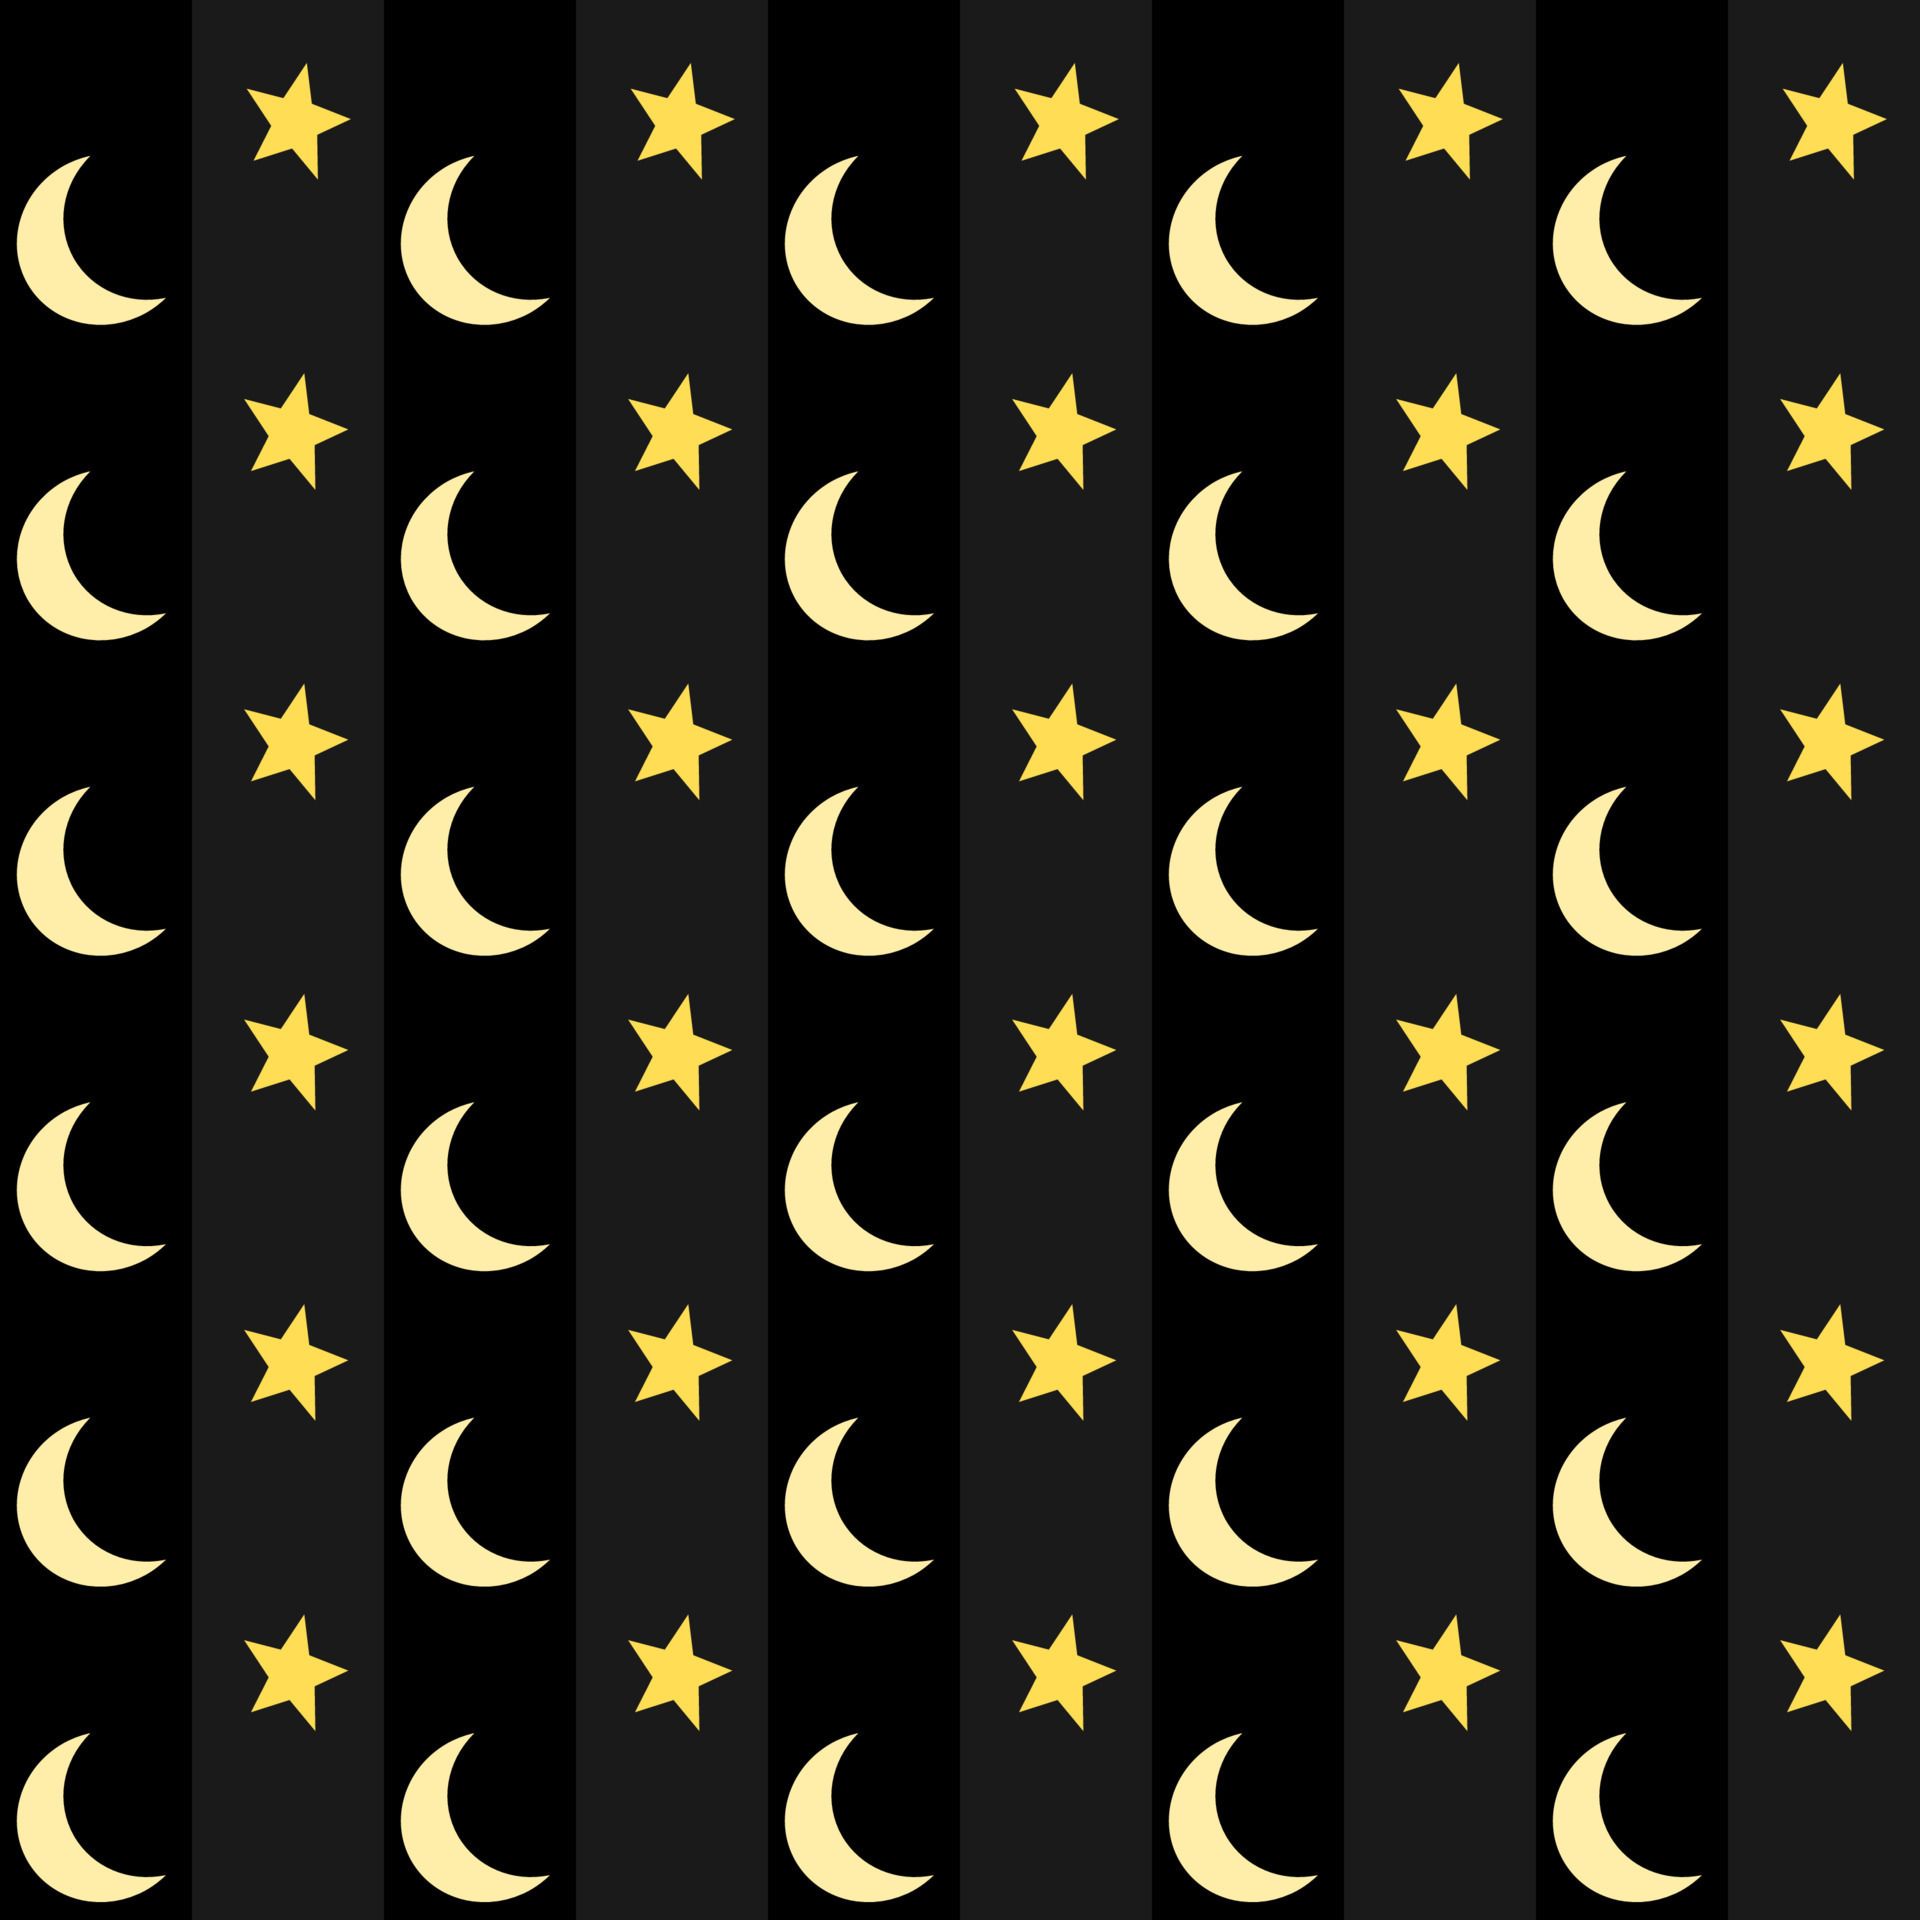  Sterne Hintergrundbild 1920x1920. Monde und Sterne im Gelb auf schwarz Hintergrund. nahtlos Muster. Vertikale vereinbart worden 20231359 Vektor Kunst bei Vecteezy